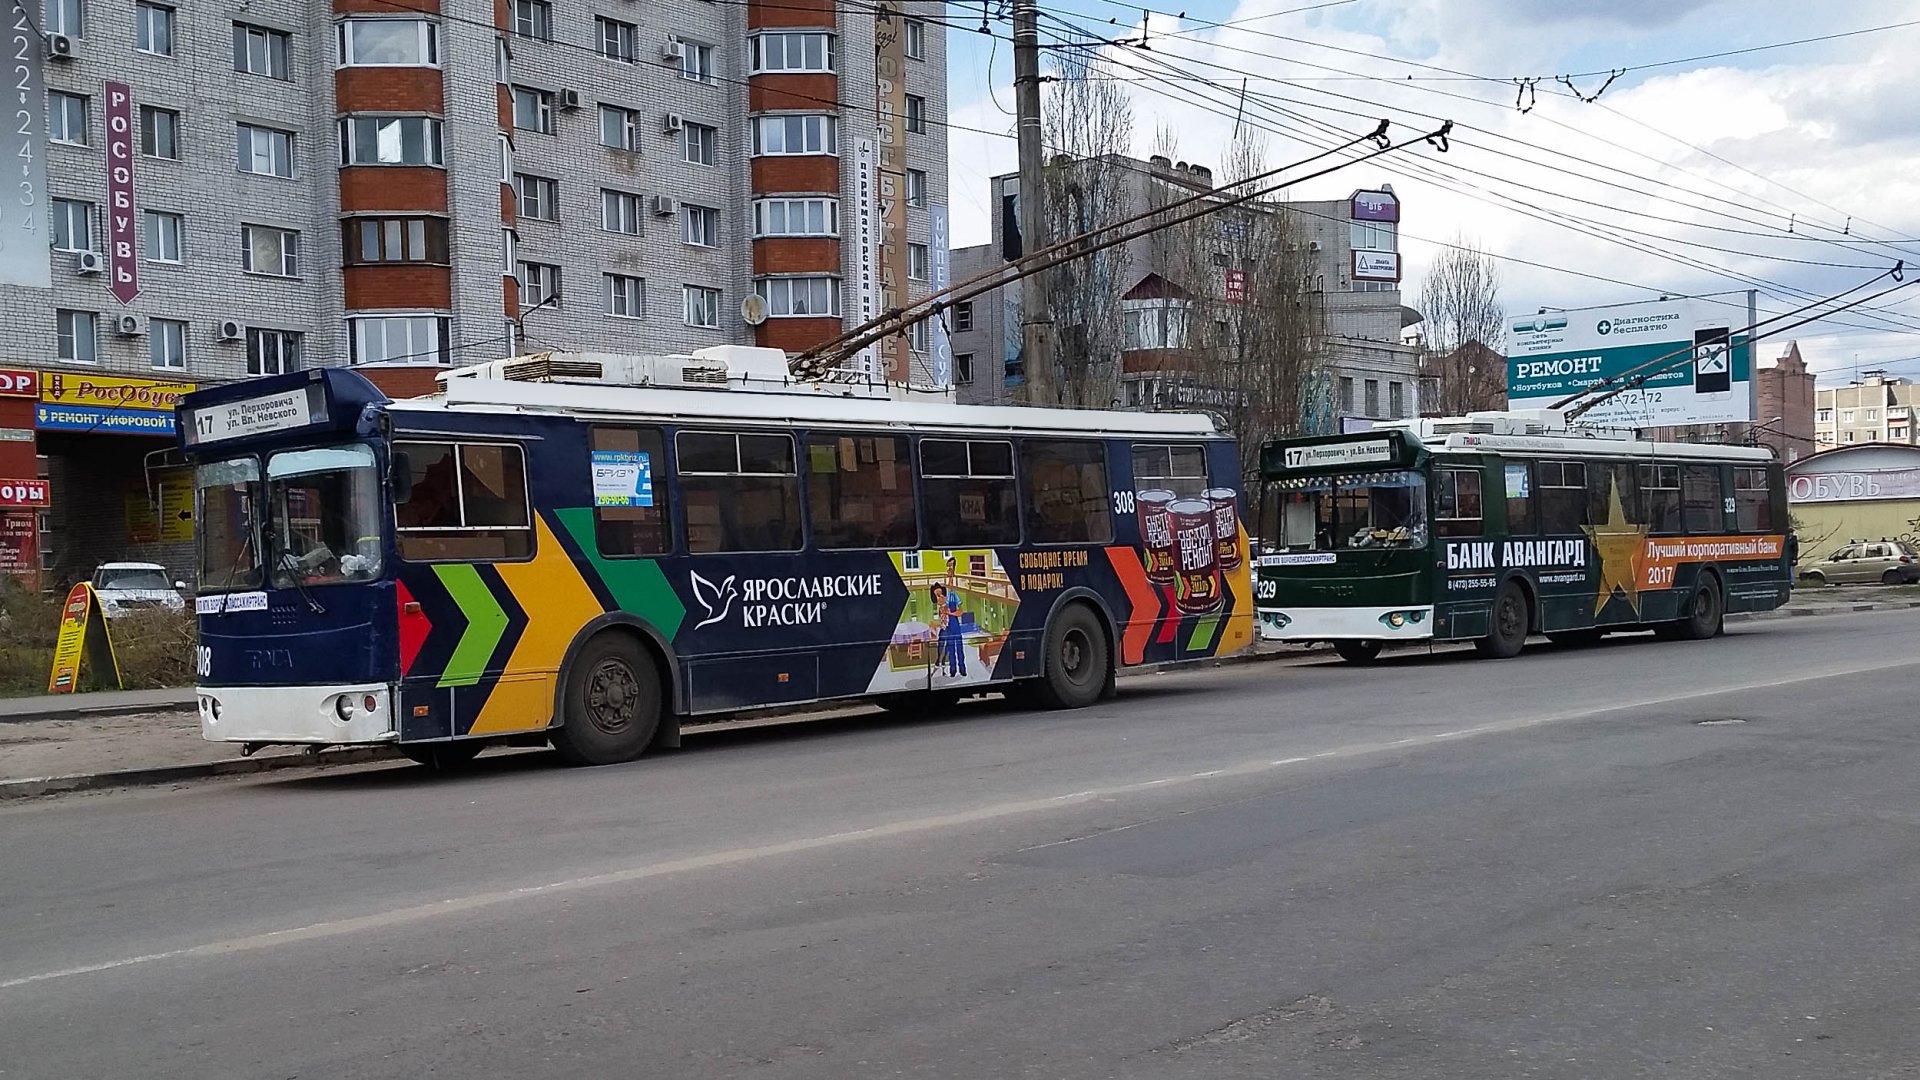 Брендирование троллейбусов, г.Екатеринбург